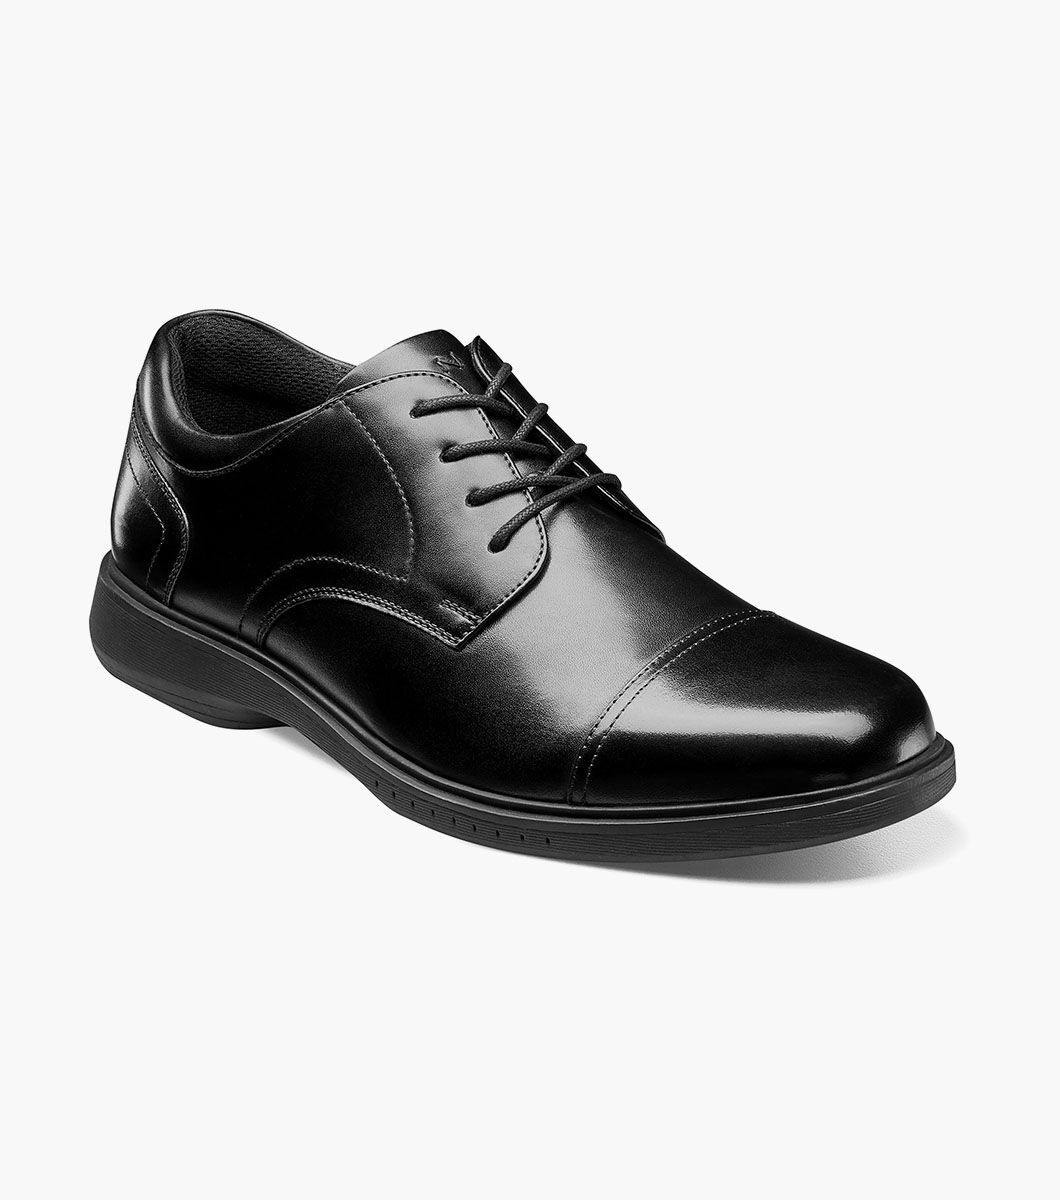 Nunn Bush Shoes KORE Pro Cap Toe Oxford Black Size 15